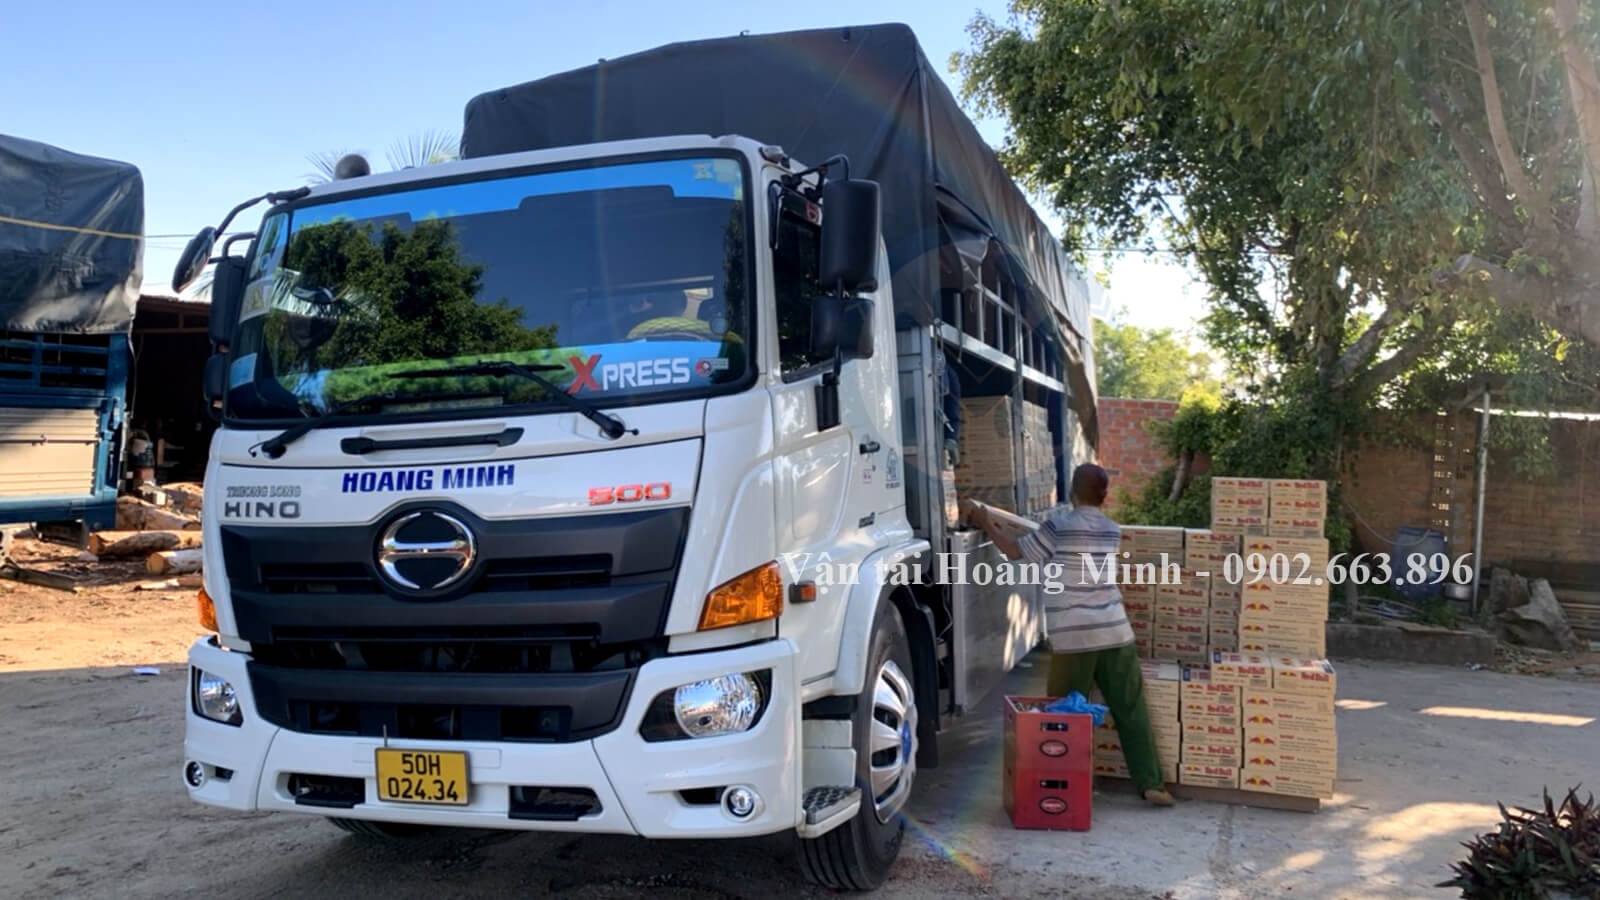 Hình ảnh nhân viên Hoàng Minh đang bốc xếp thùng linh kiện điện tử lên xe tải để chở đi TpHCM.jpg